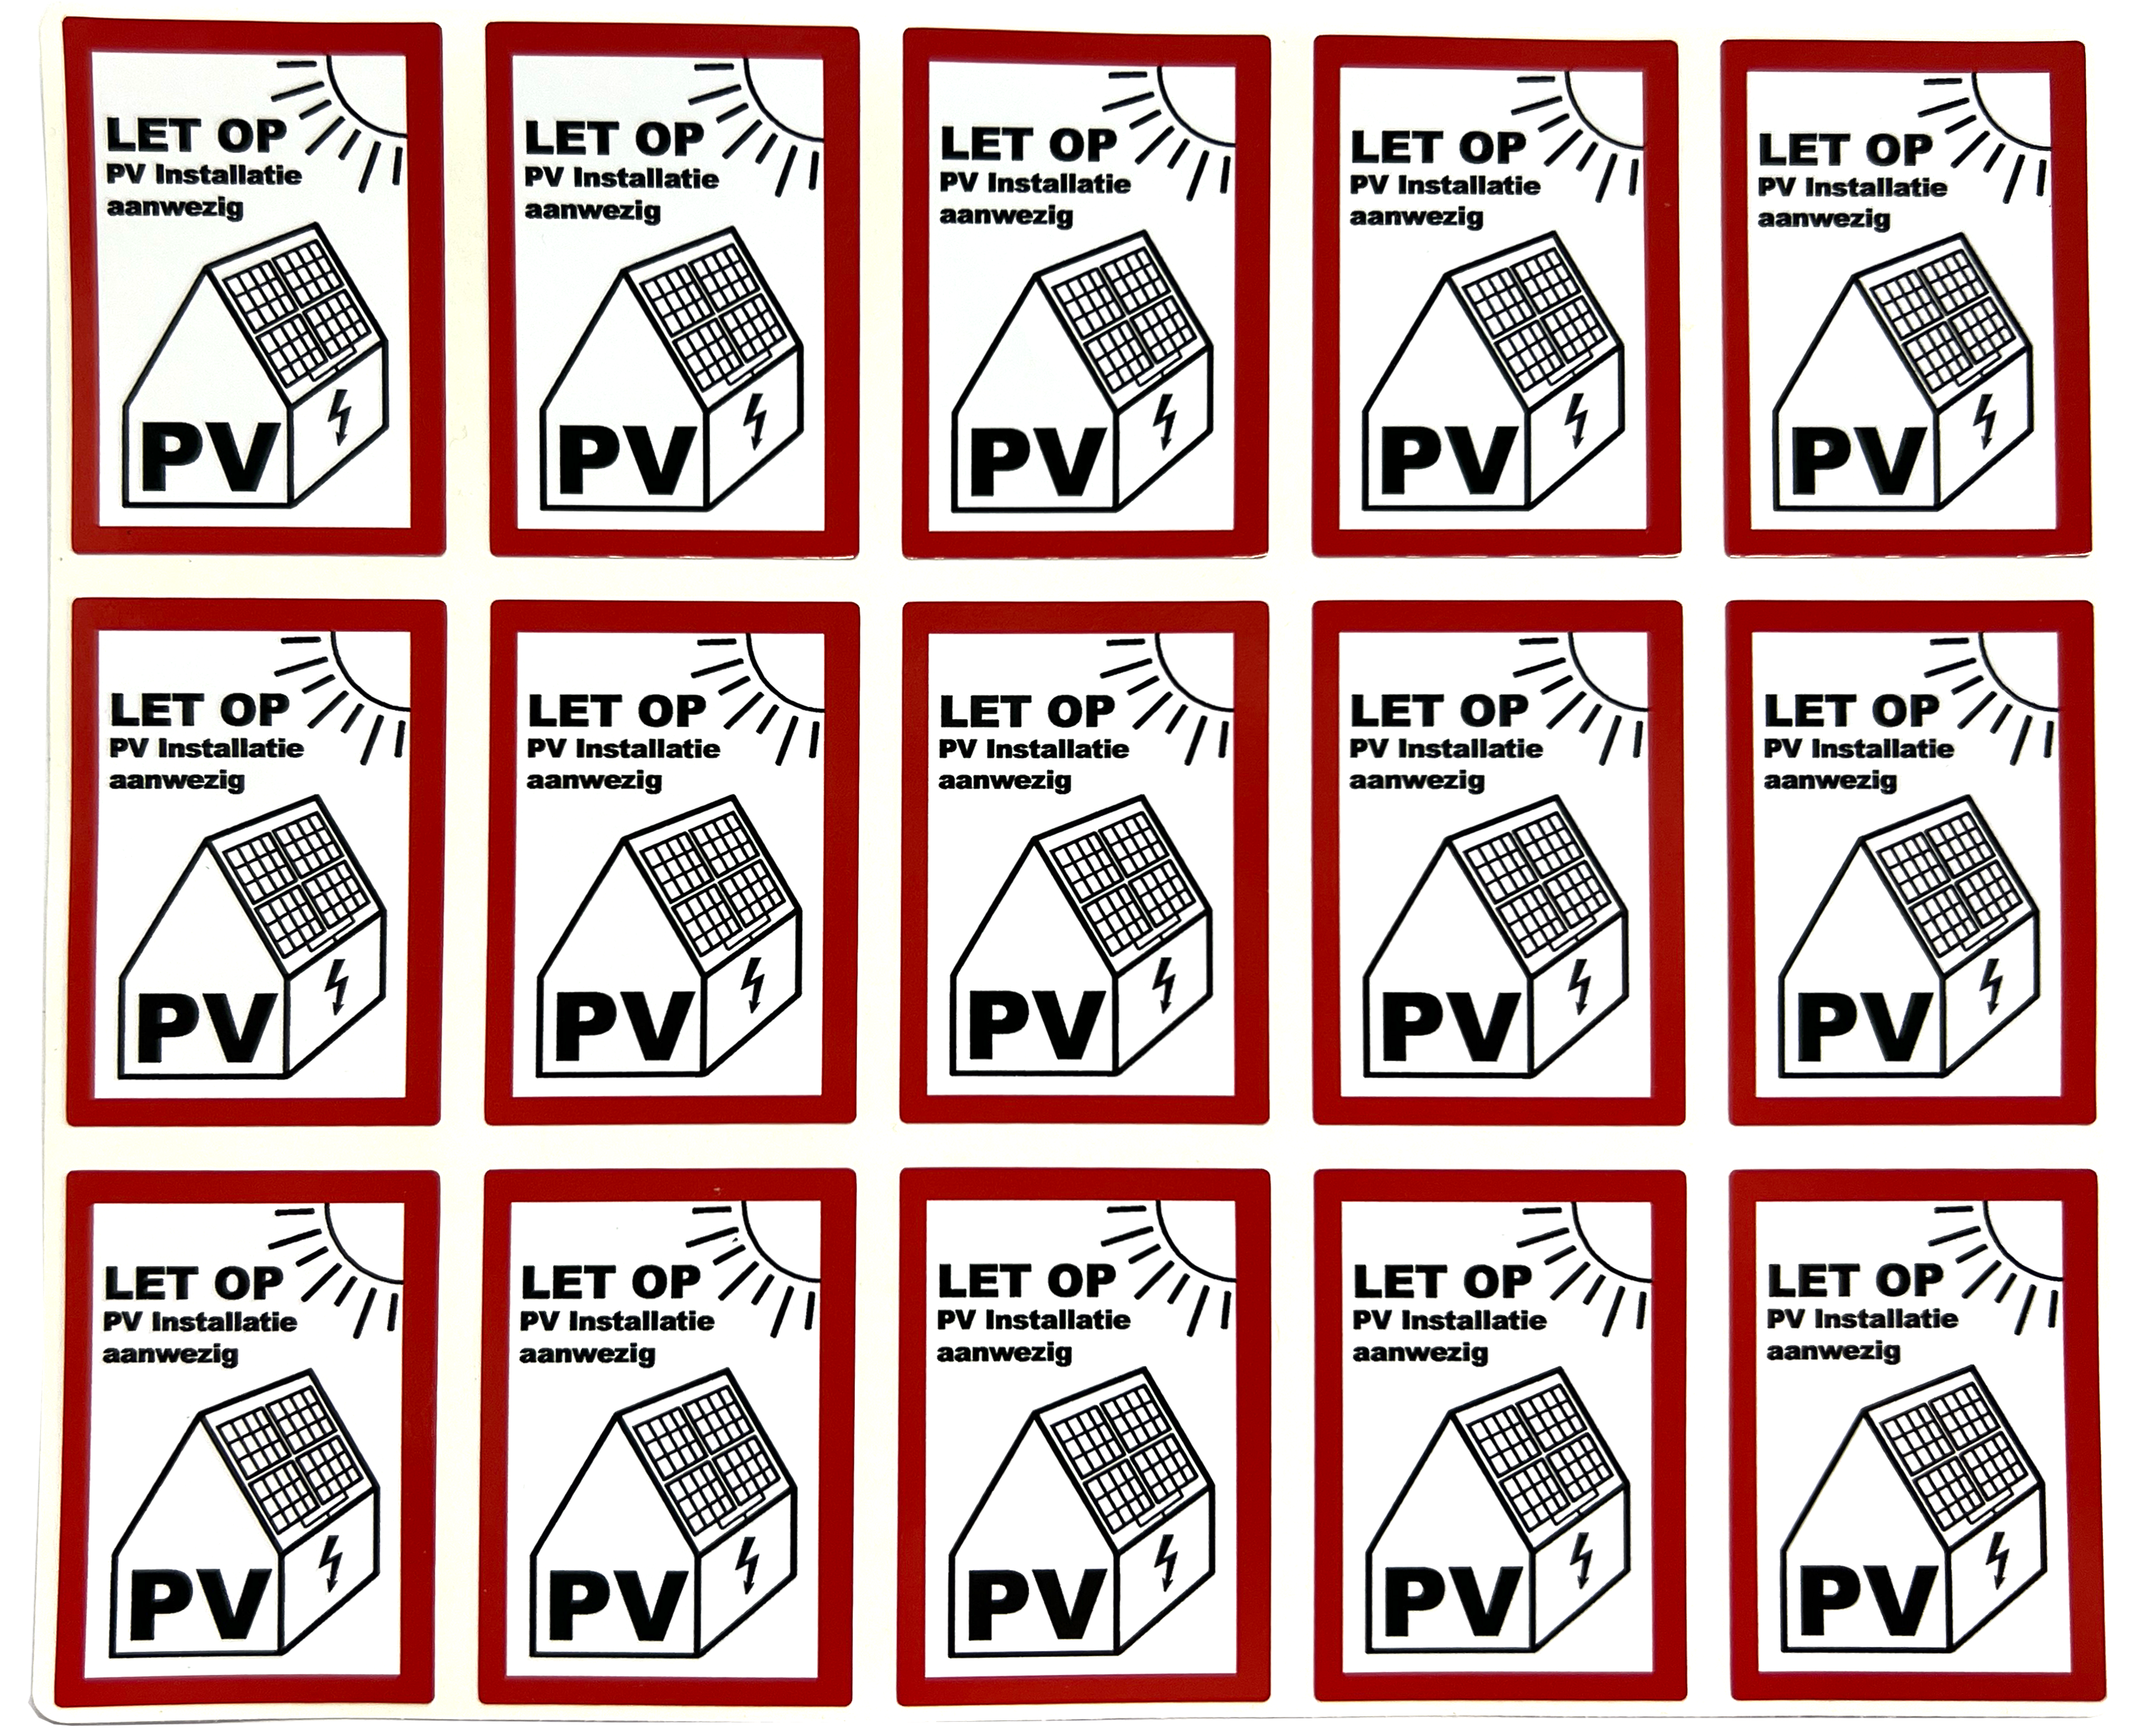 15 stuks 100x70 mm PV Sticker NEN1010 - LET OP: PV installatie aanwezig